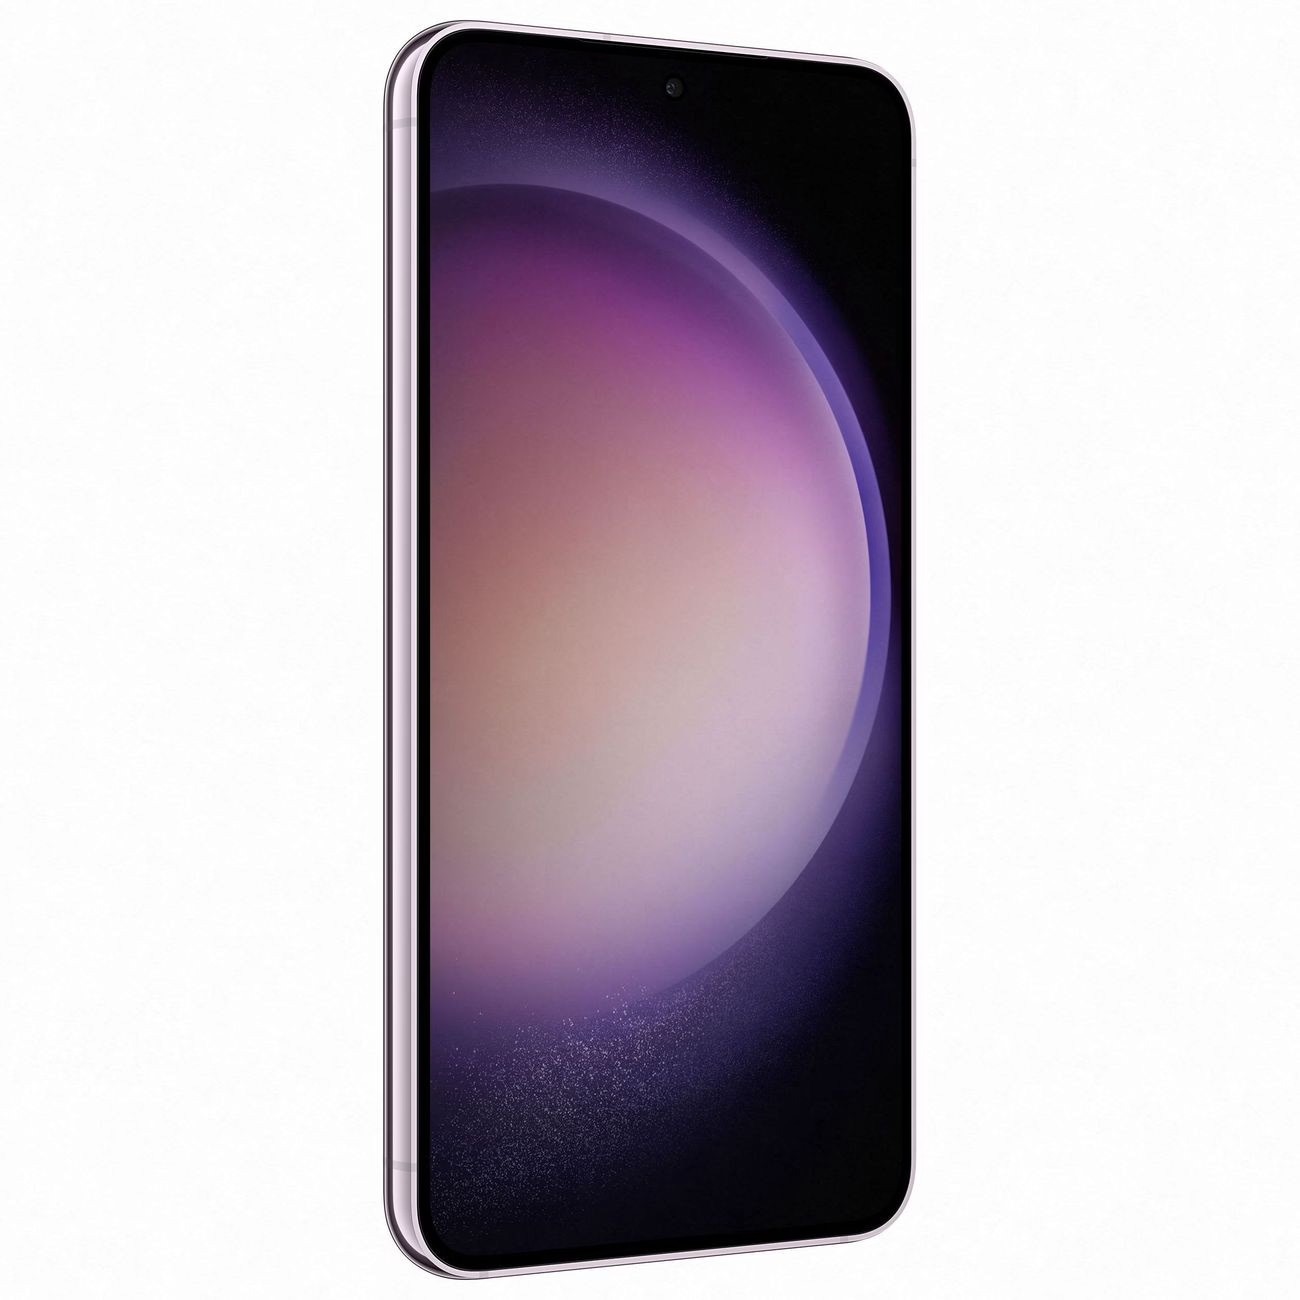 Купить смартфон samsung galaxy s23 8/256gb lavender S-Серия в официальном магазине Apple, Samsung, Xiaomi. iPixel.ru Купить, заказ, кредит, рассрочка, отзывы,  характеристики, цена,  фотографии, в подарок.